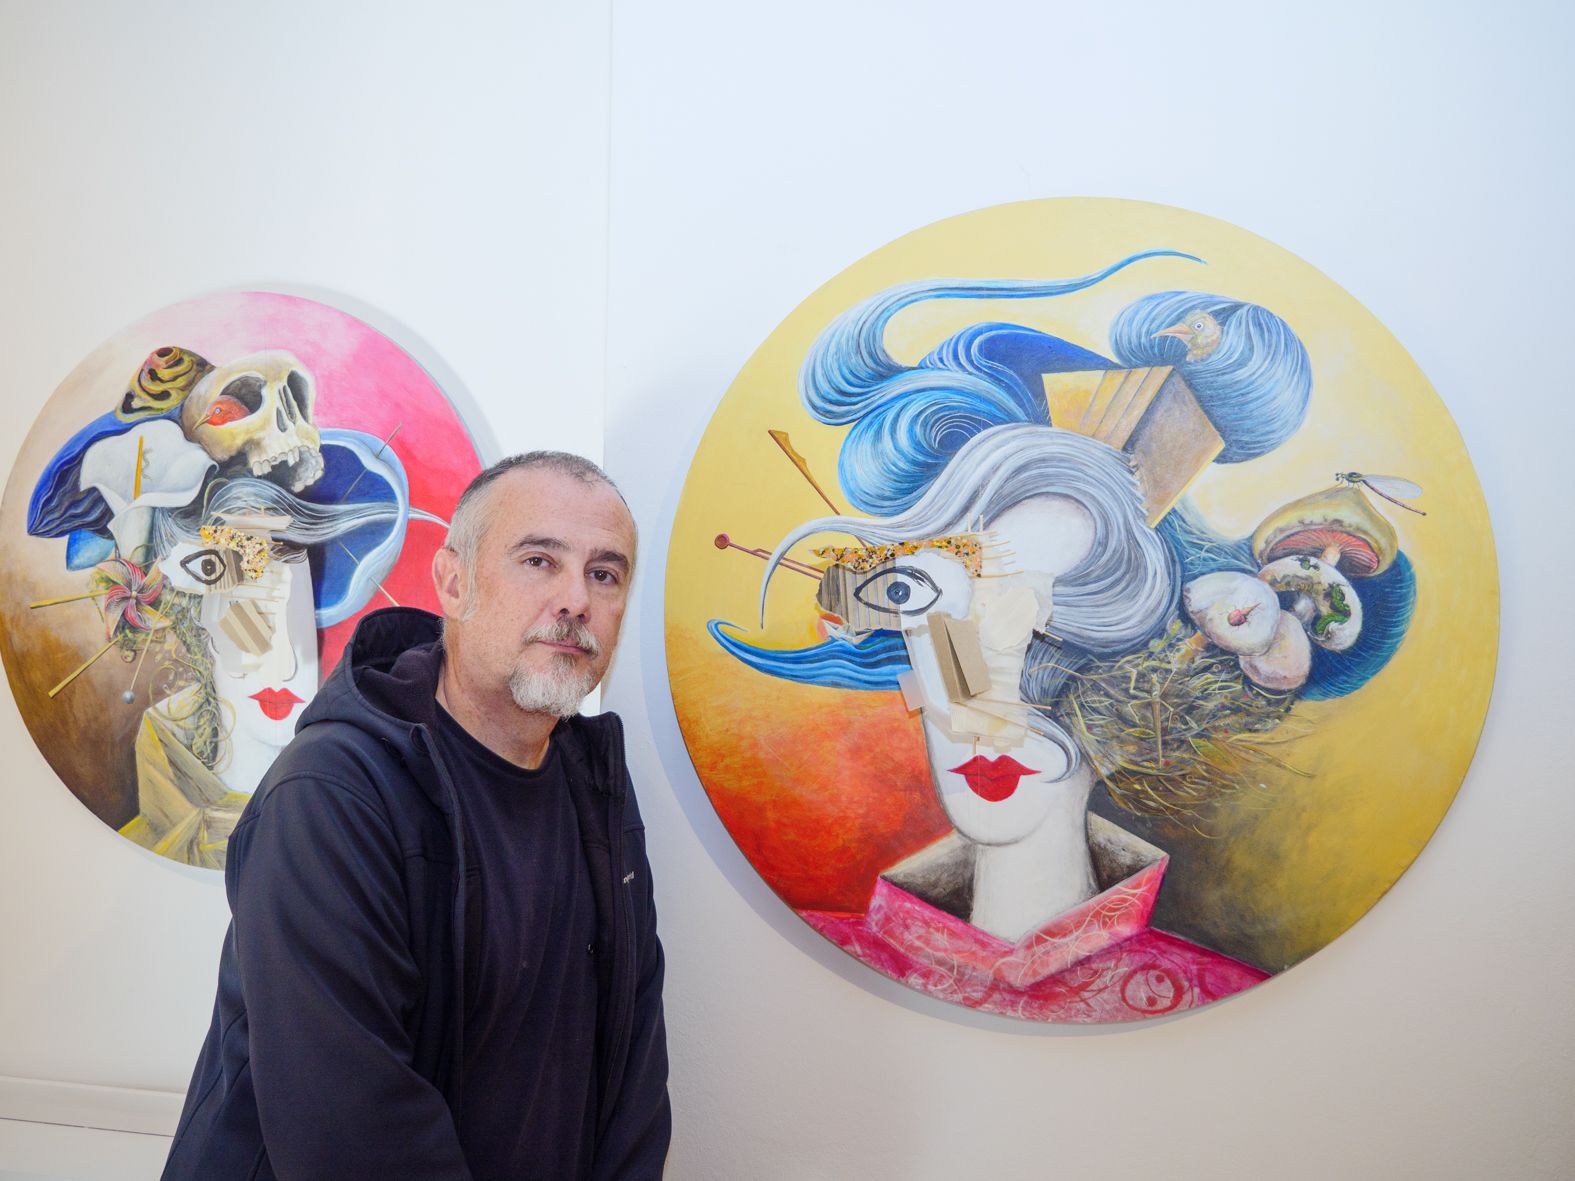 Karlos Viuda posa en la exposición de la sala Vela Zanetti delante de dos de sus Geishas. | VICENTE GARCÍA